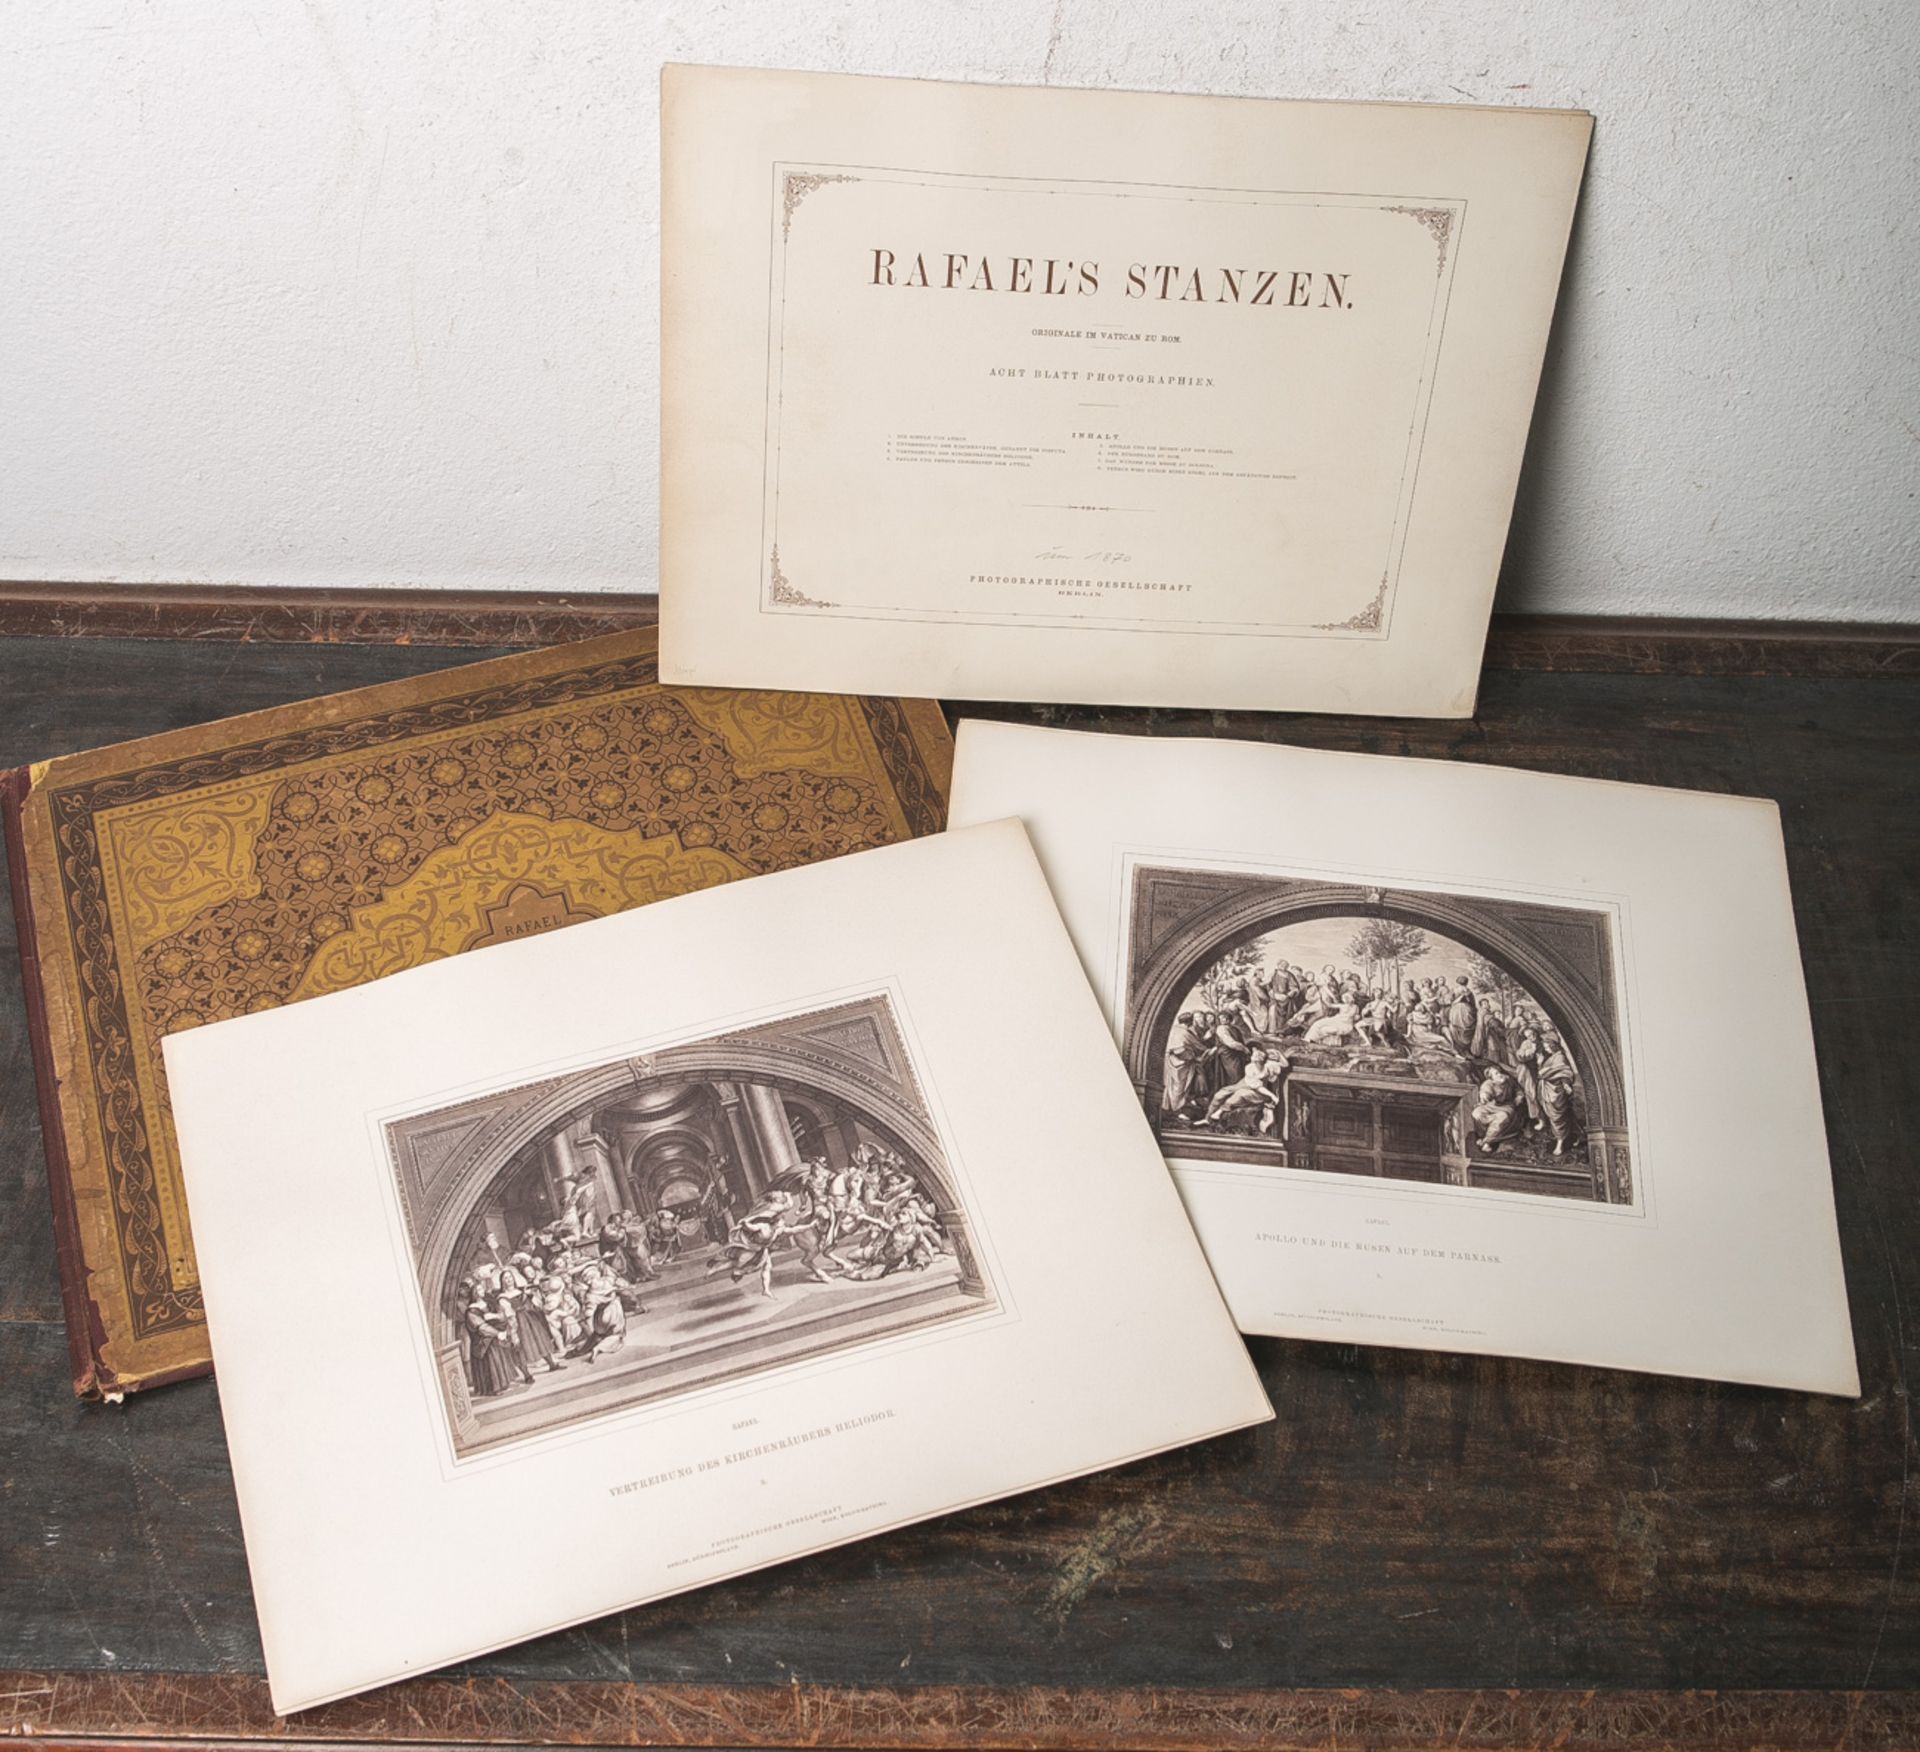 Mappe "Rafael Stanzen-Originale im Vatican zu Rom", acht Blatt Photographien,Photographische